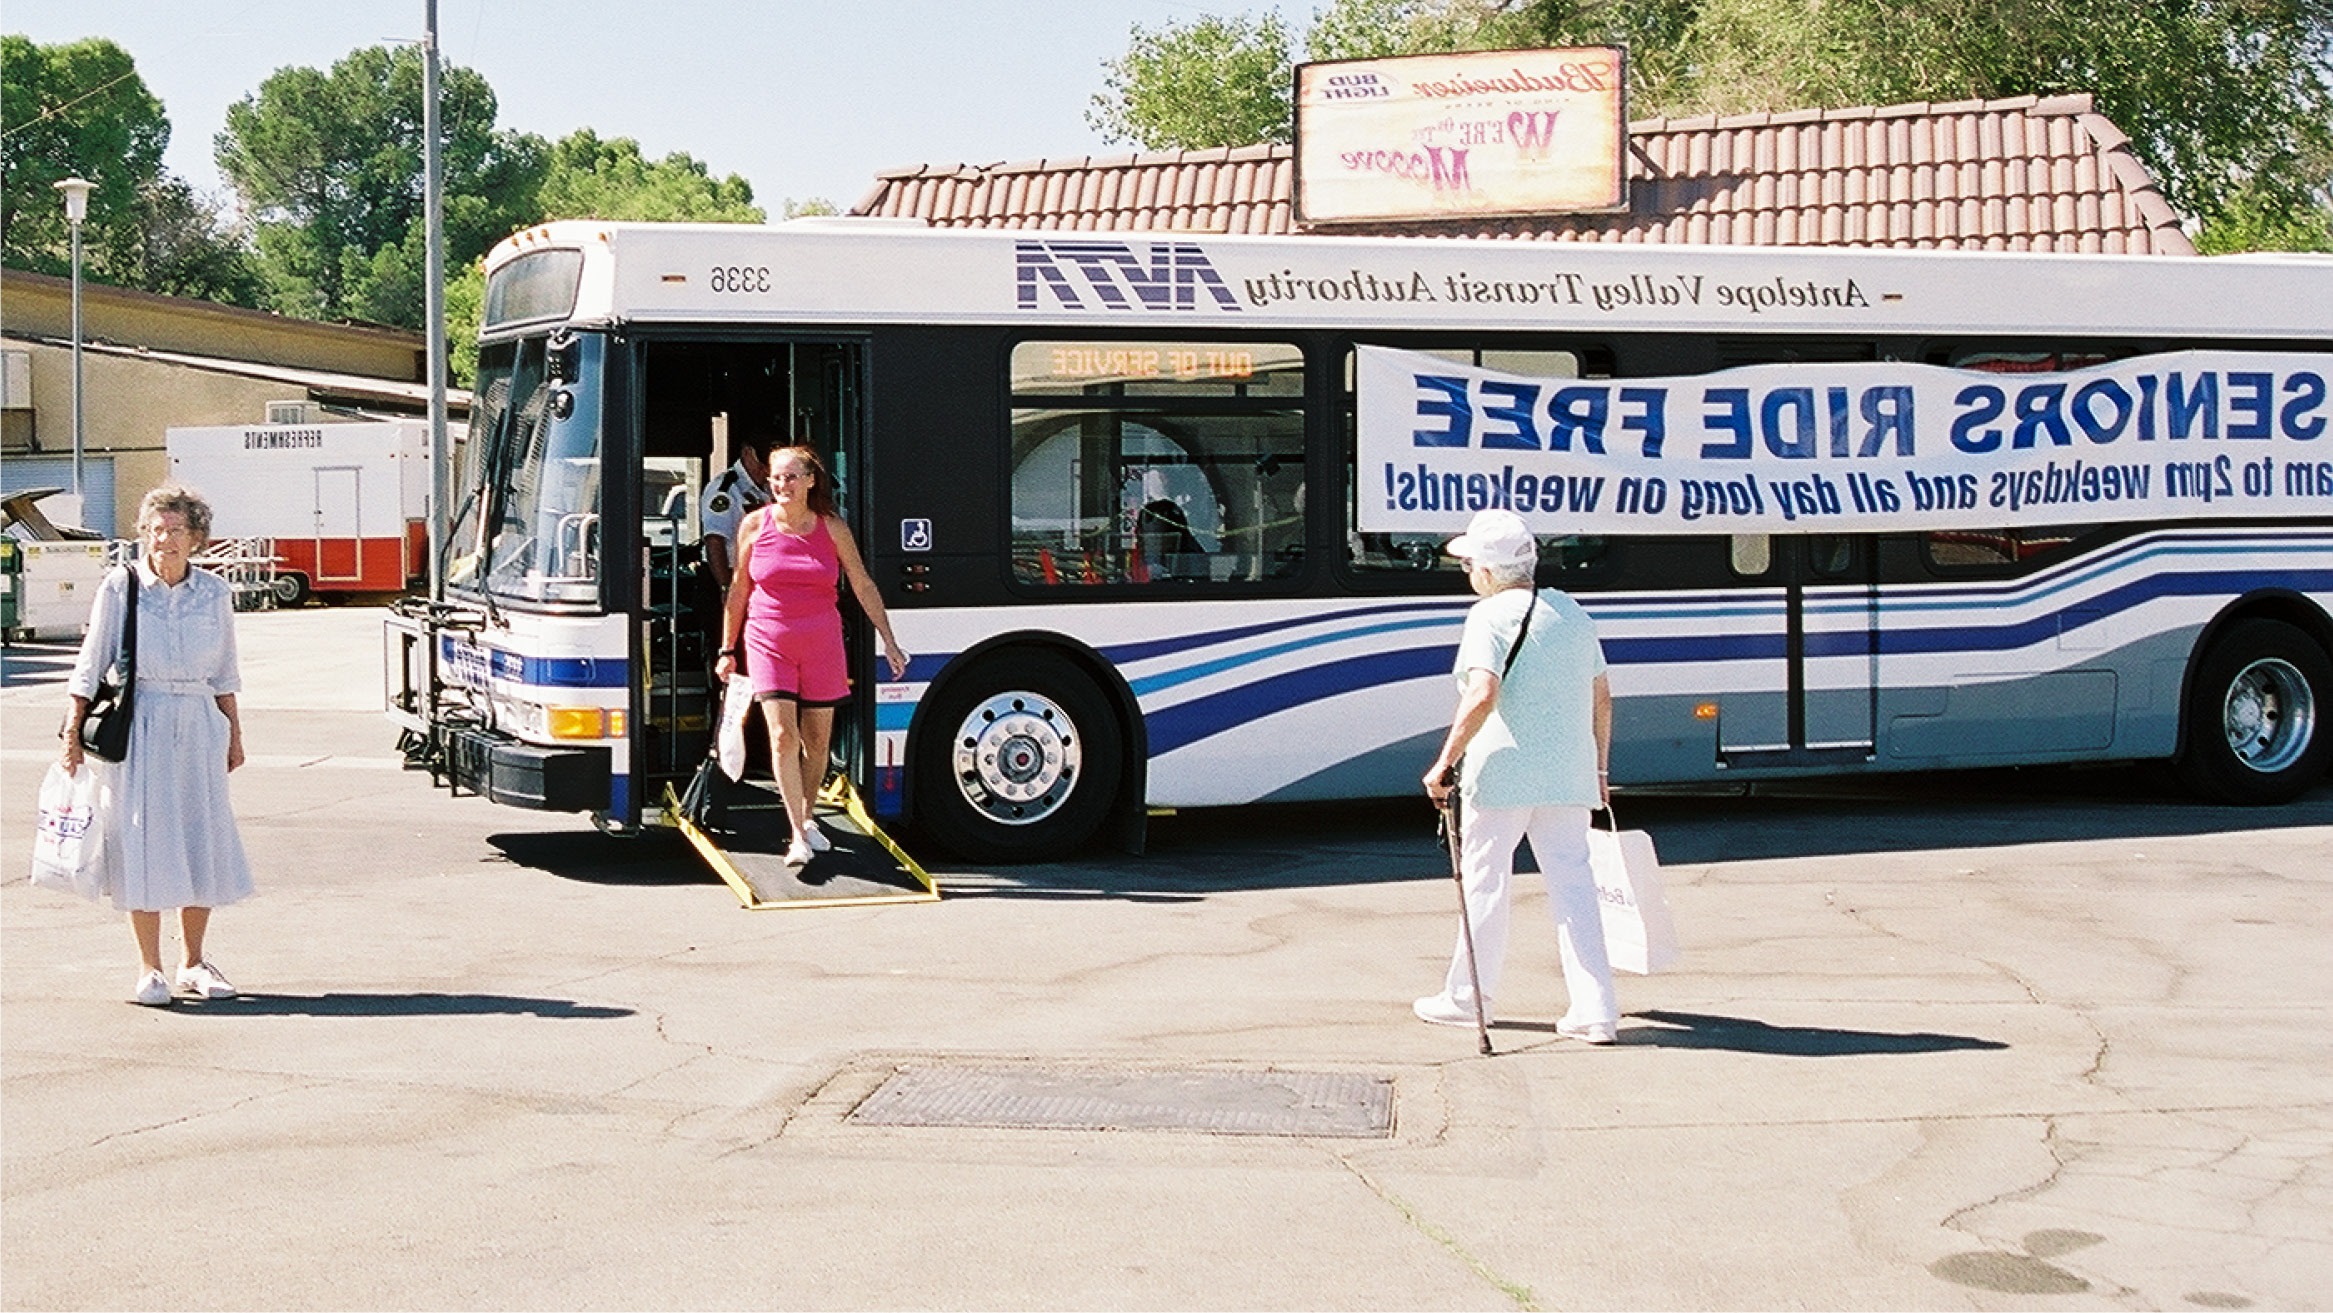 AVTA Bus Drops off Seniors